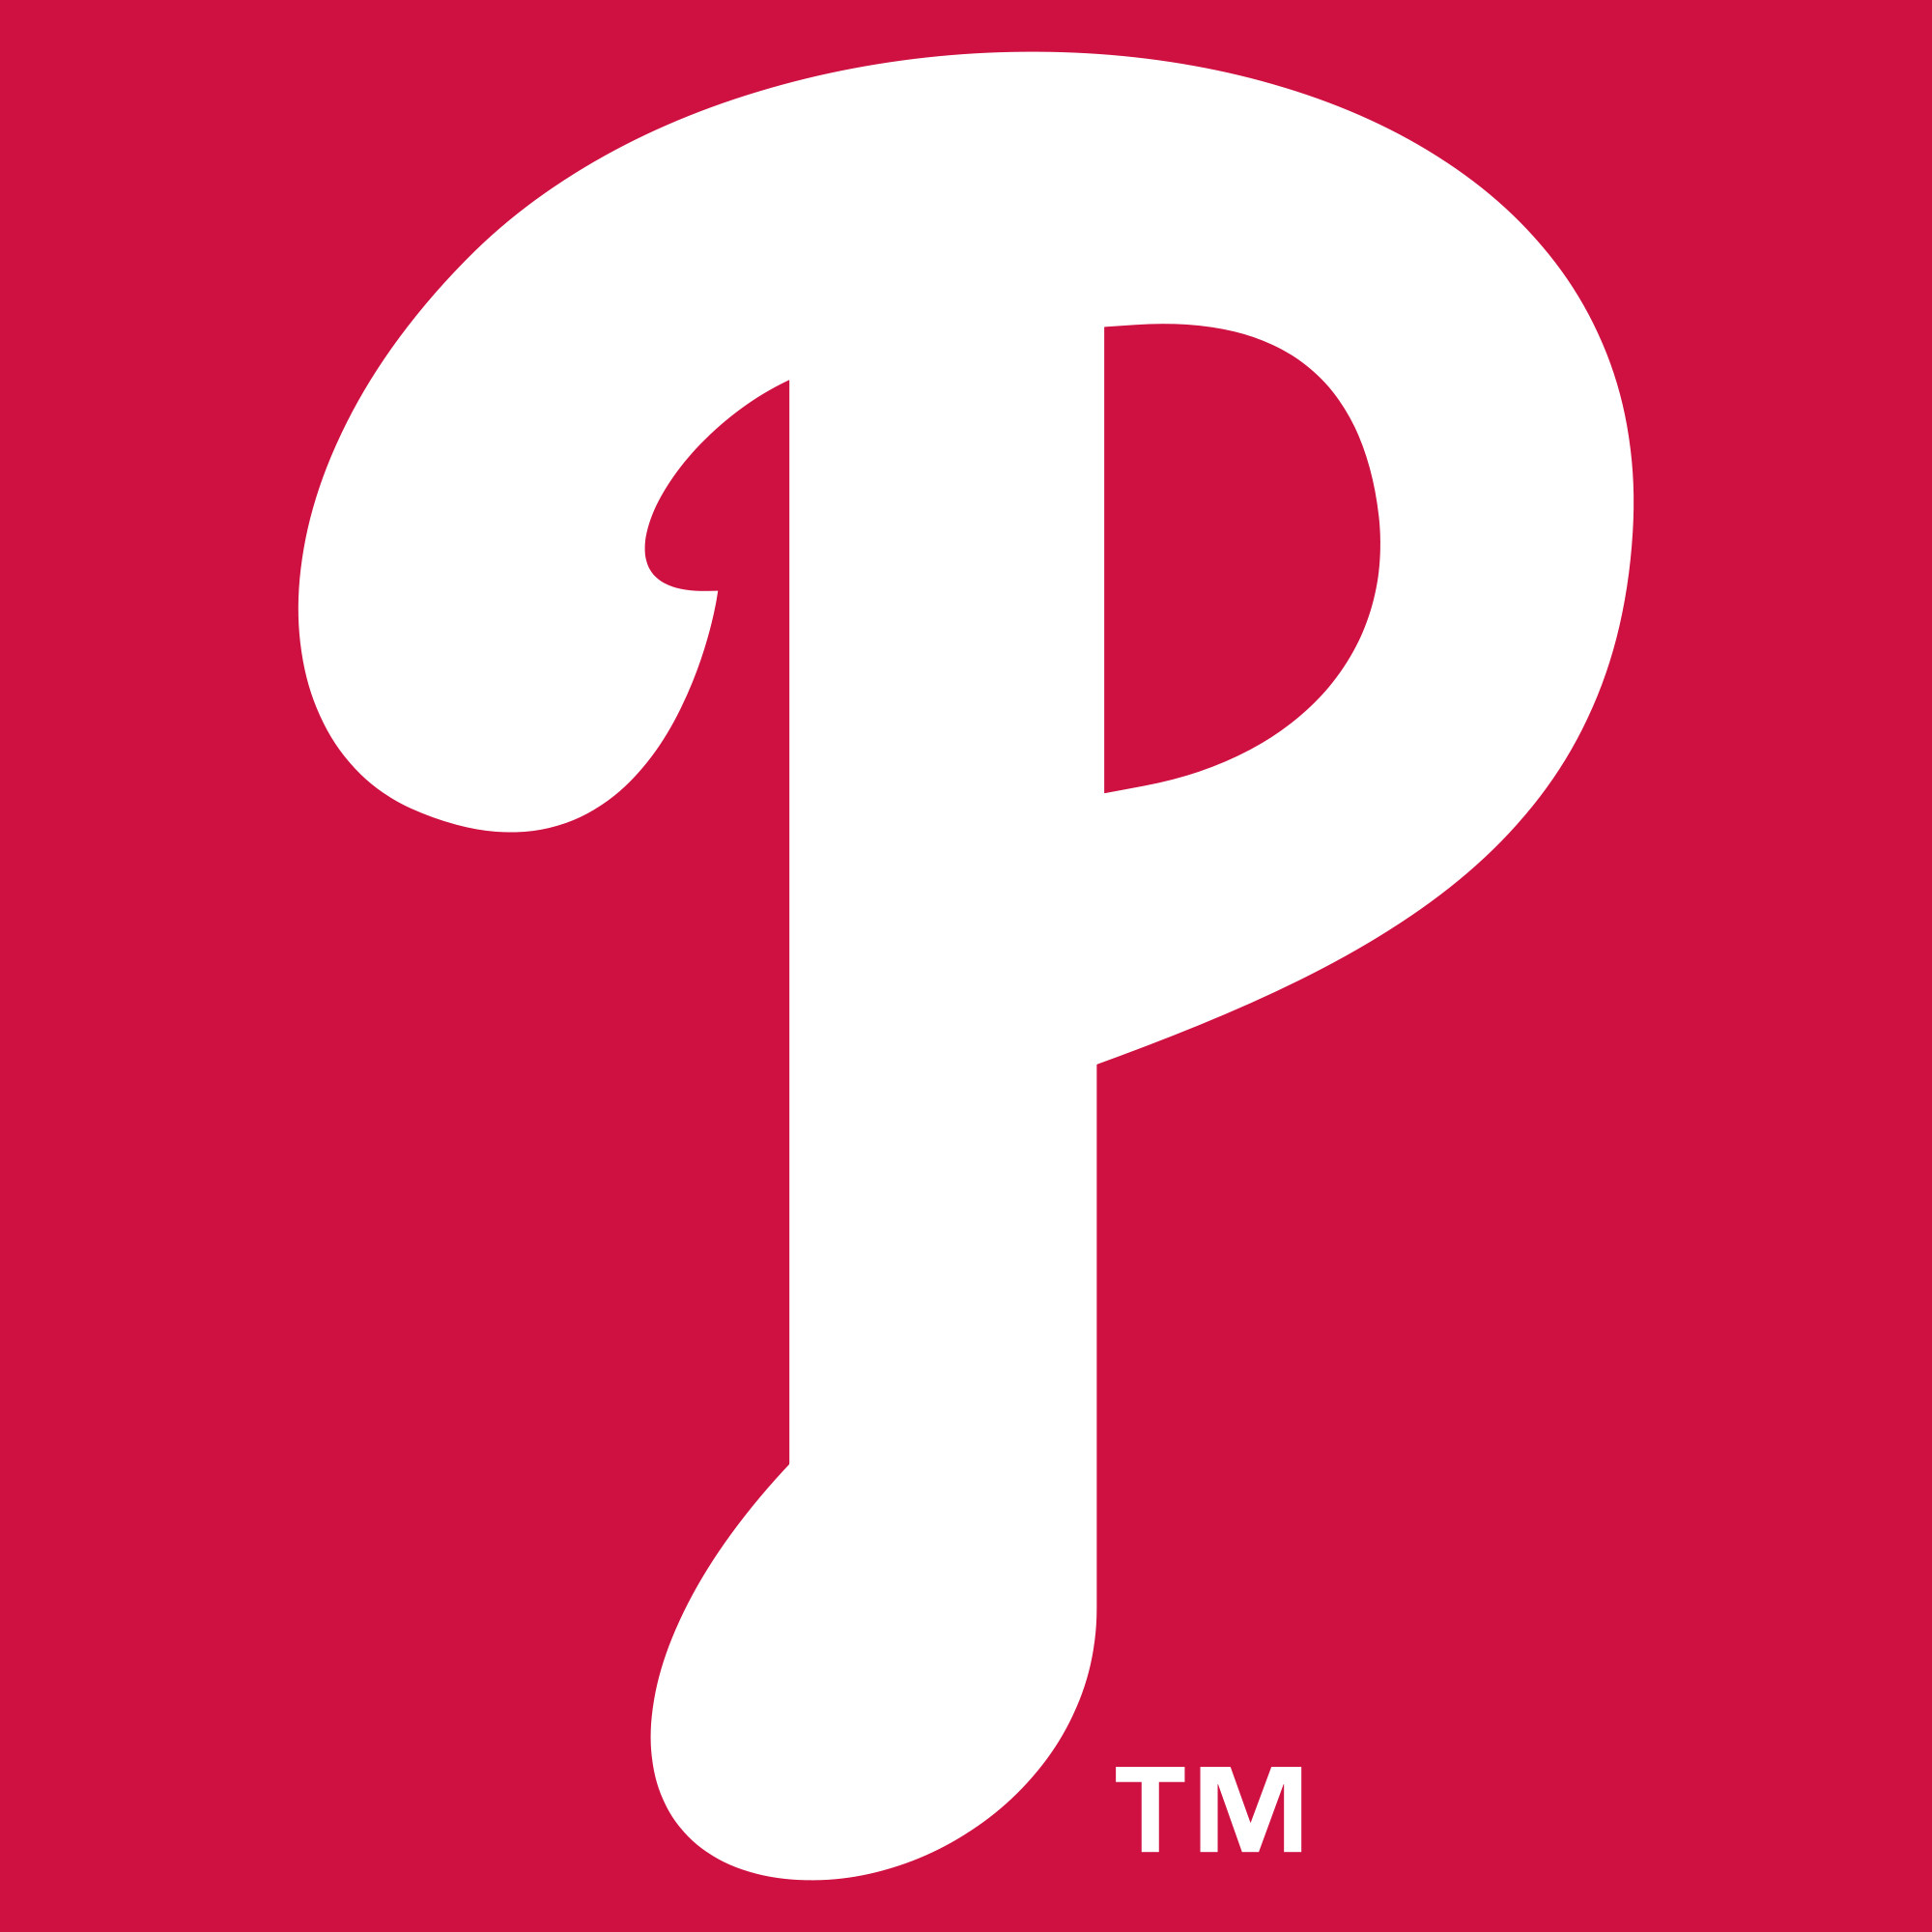 2000x2000 2015 Philadelphia Phillies season - Wikipedia, the free encyclopedia